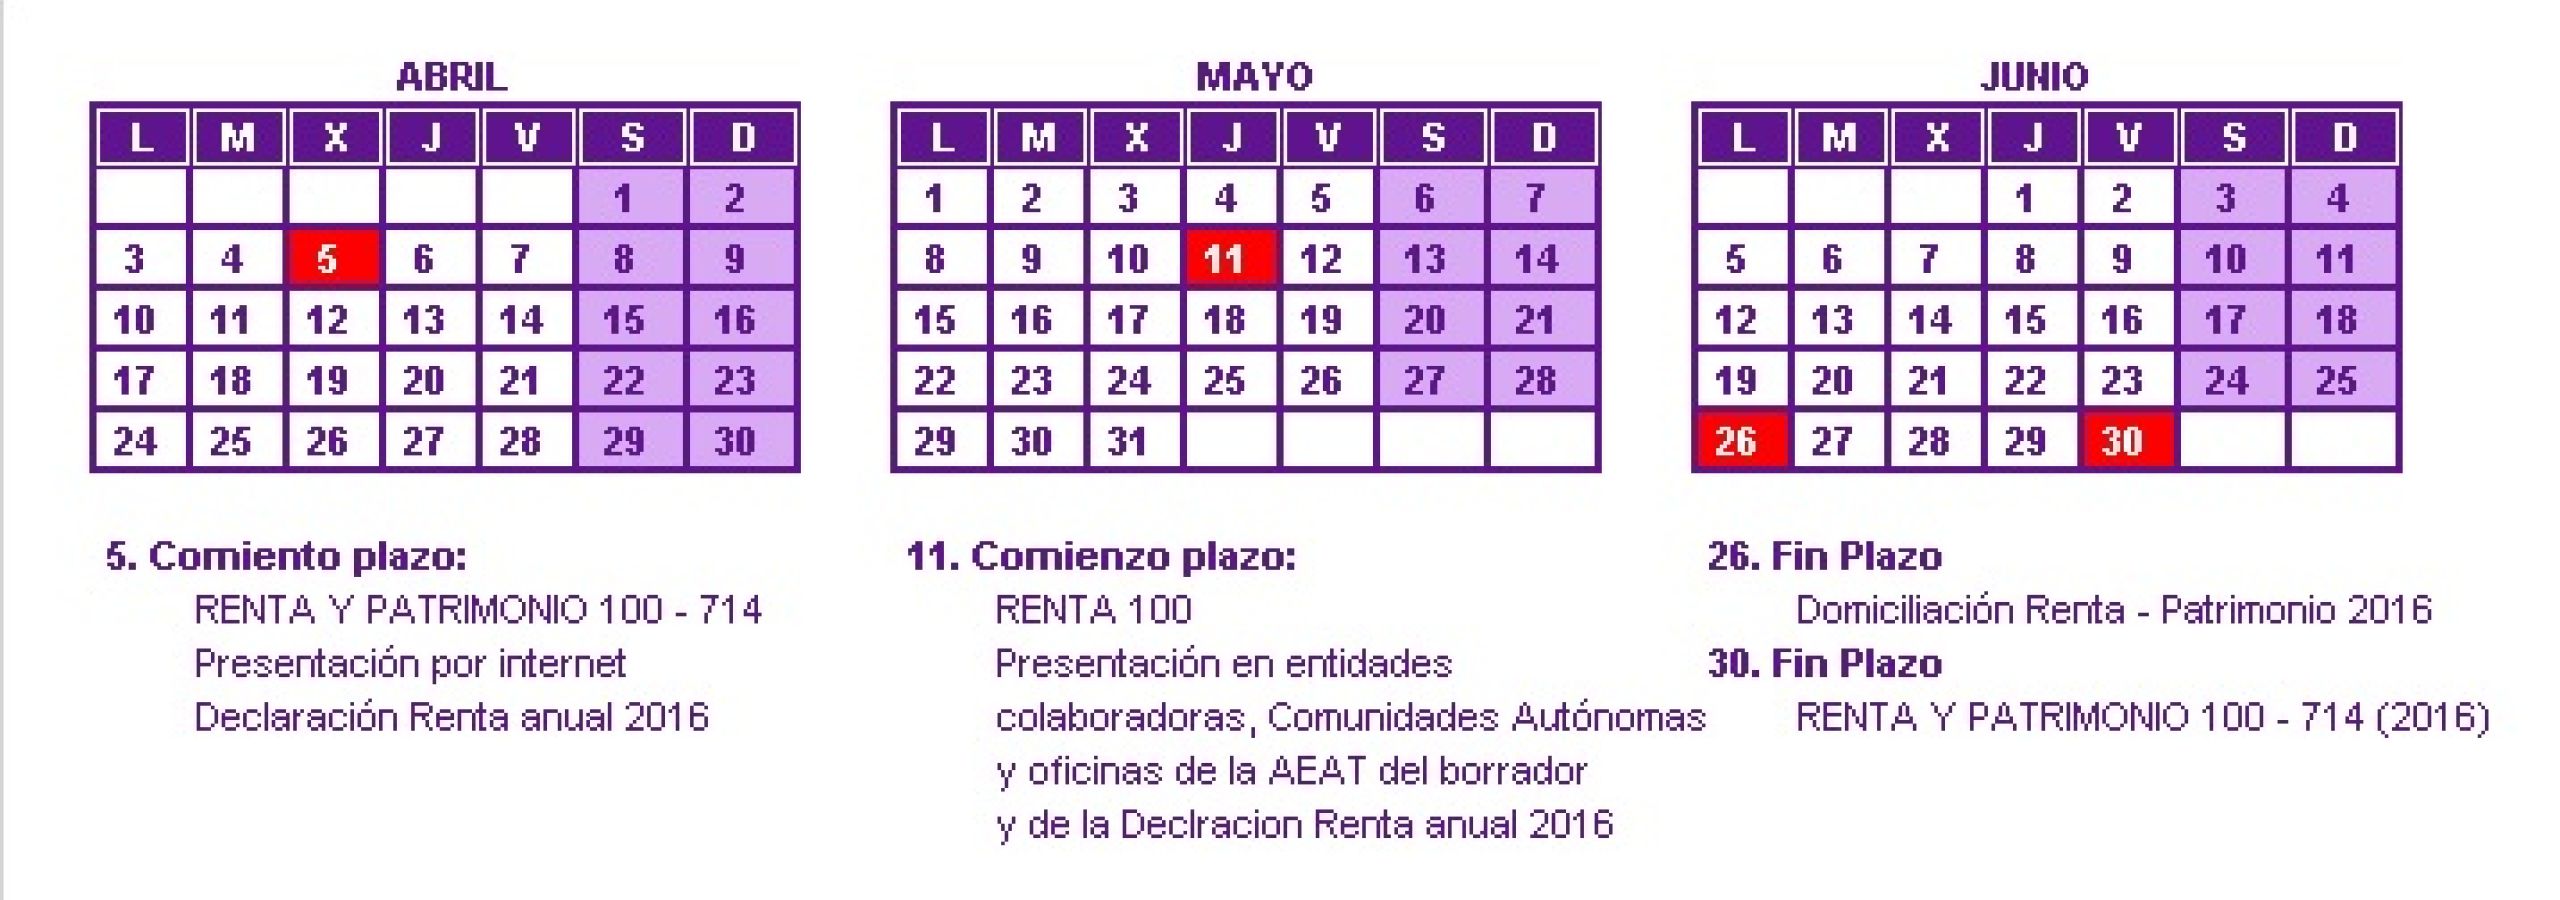 Calendario Renta 2016